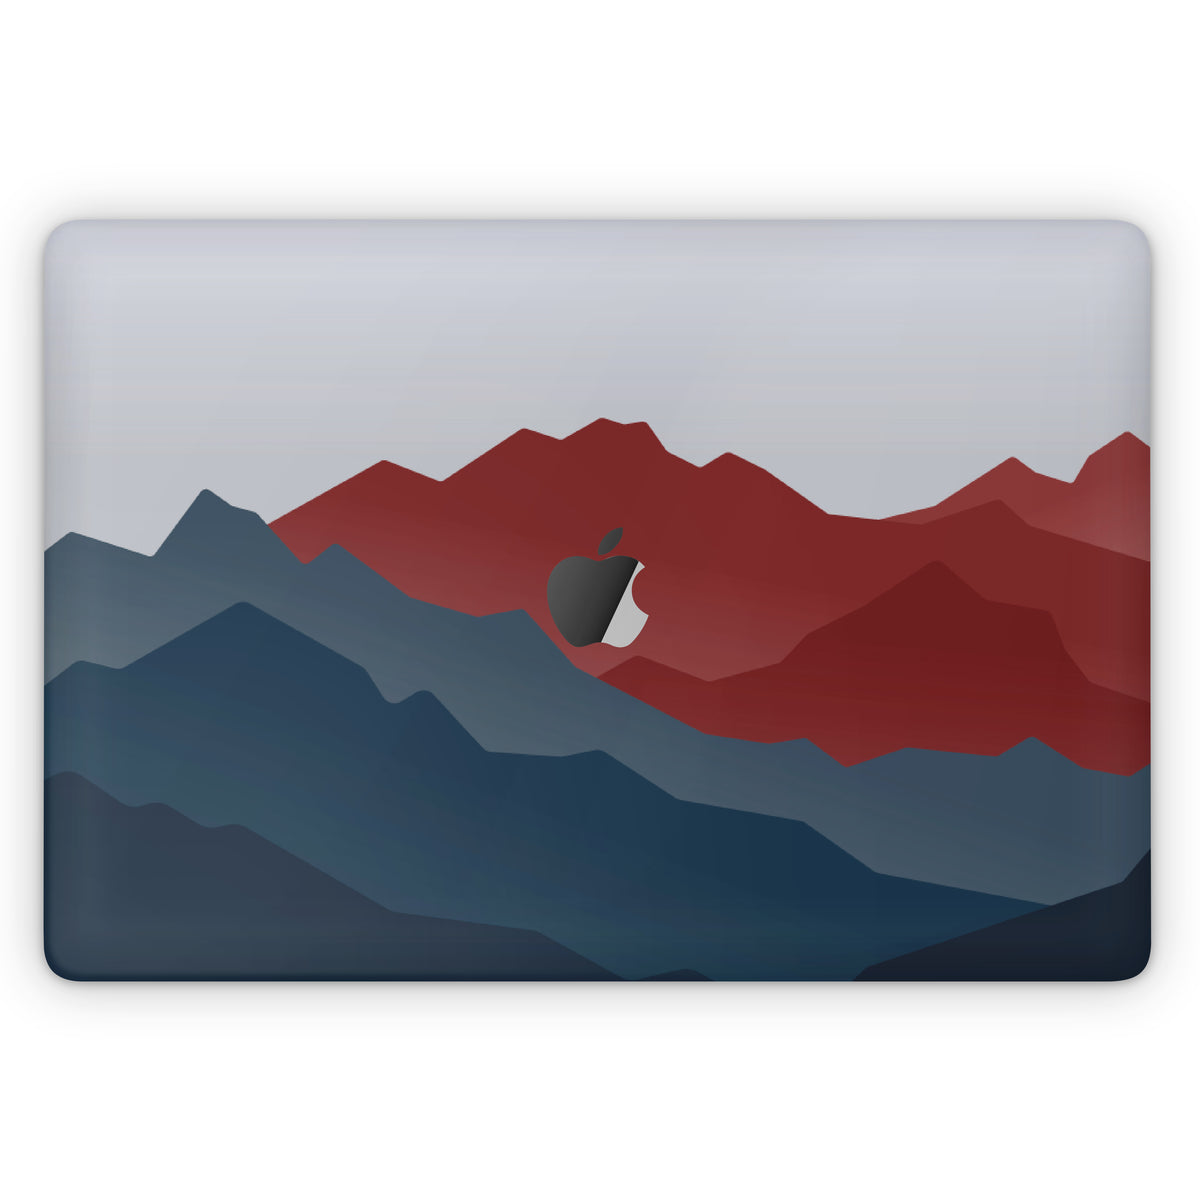 Rockies (MacBook Skin)